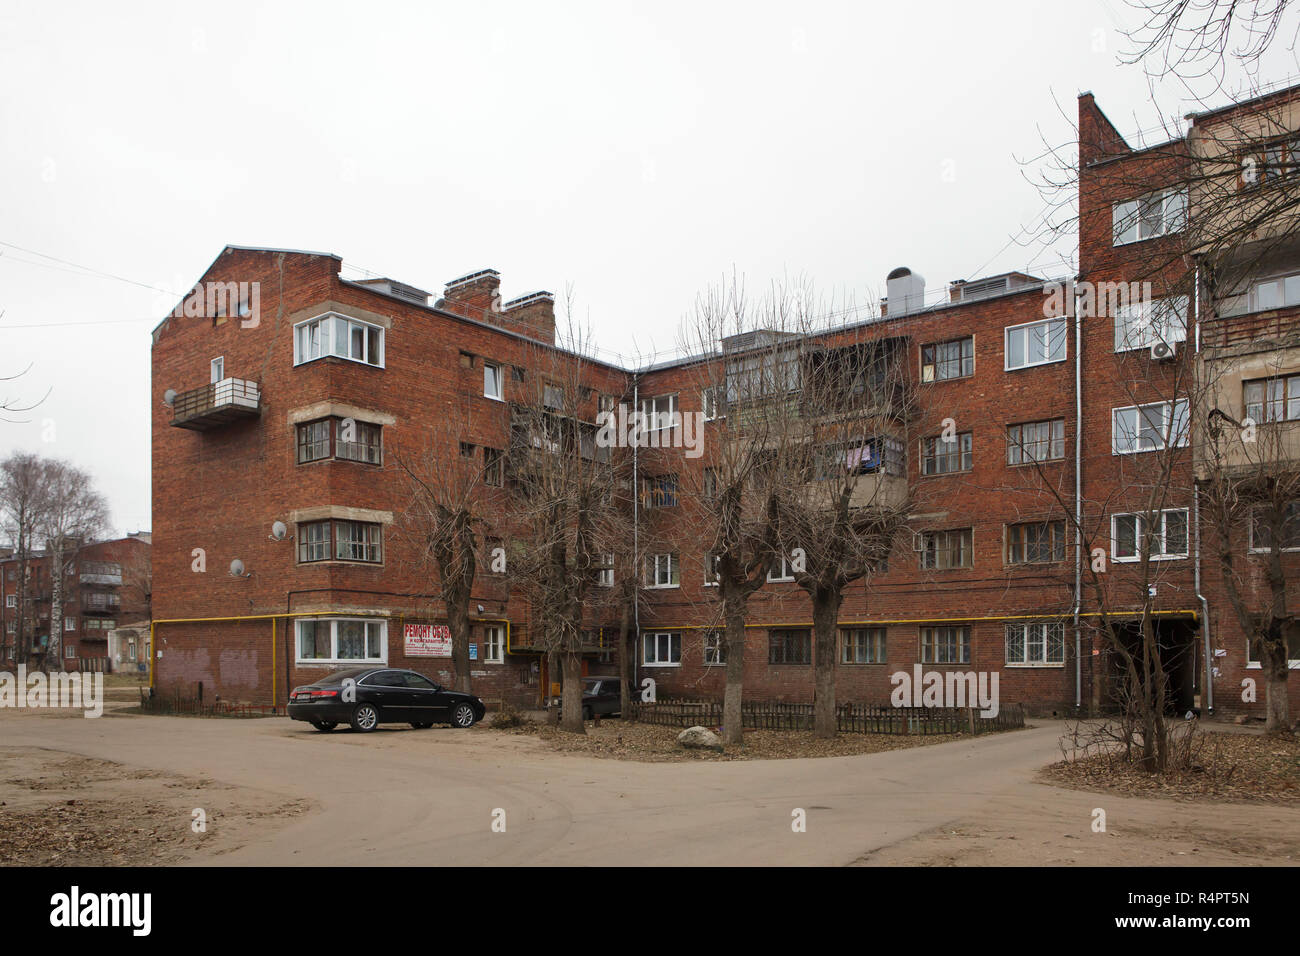 Cour intérieure de l'habitation constructiviste complexe avec 400 appartements surnommée la chambre collective à Ivanovo, Russie. L'appartement des bâtiments conçus par l'architecte moderniste soviétique Ilya Golossov a été construit en 1929-1930 dans la rue Krasnykh Zor comme un complexe d'habitation pour les membres de la société coopérative de logement de la première colonie du travailleur. ATTENTION : Cette image fait partie d'un reportage photo de 35 photos présentant l'architecture constructiviste soviétique à Ivanovo. Banque D'Images